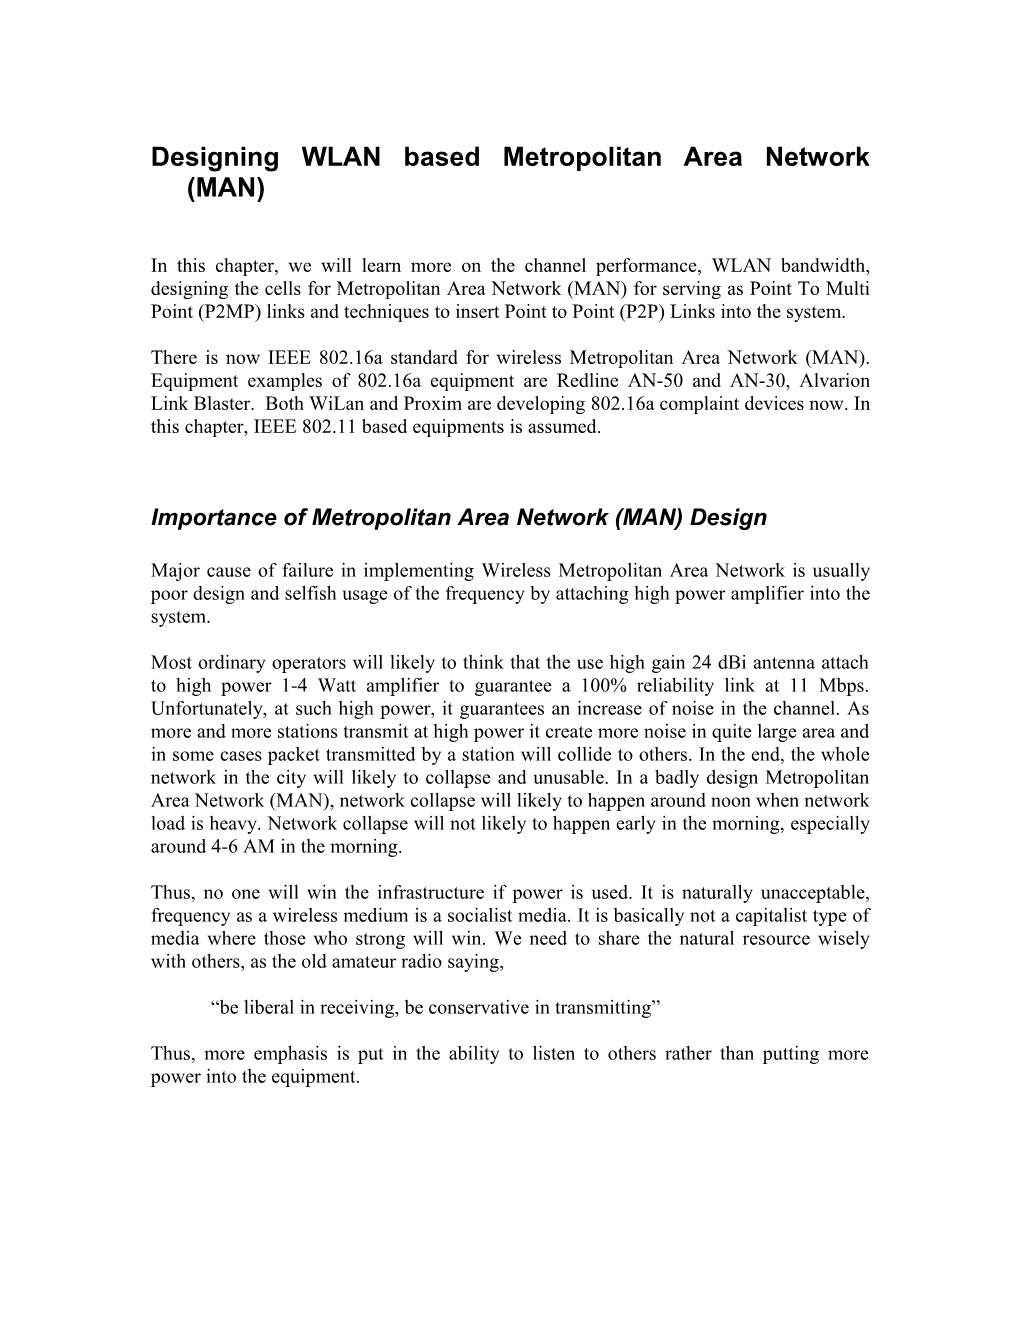 Designing WLAN Based Metropolitan Area Network (MAN)